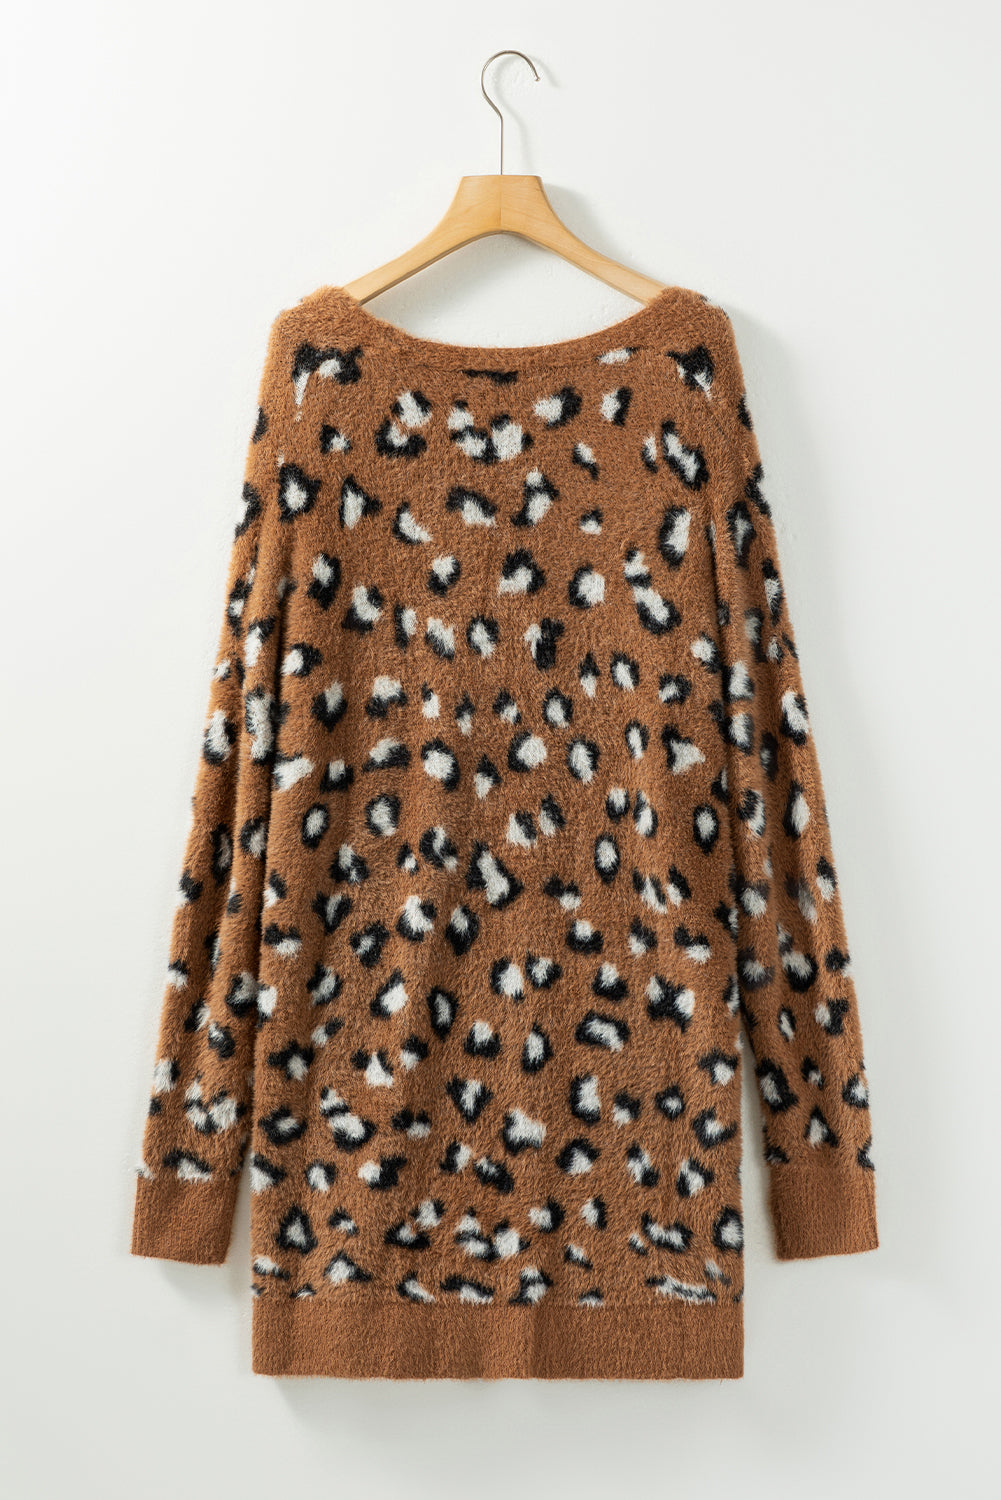 Brown Leopard Print Fur Cardigan